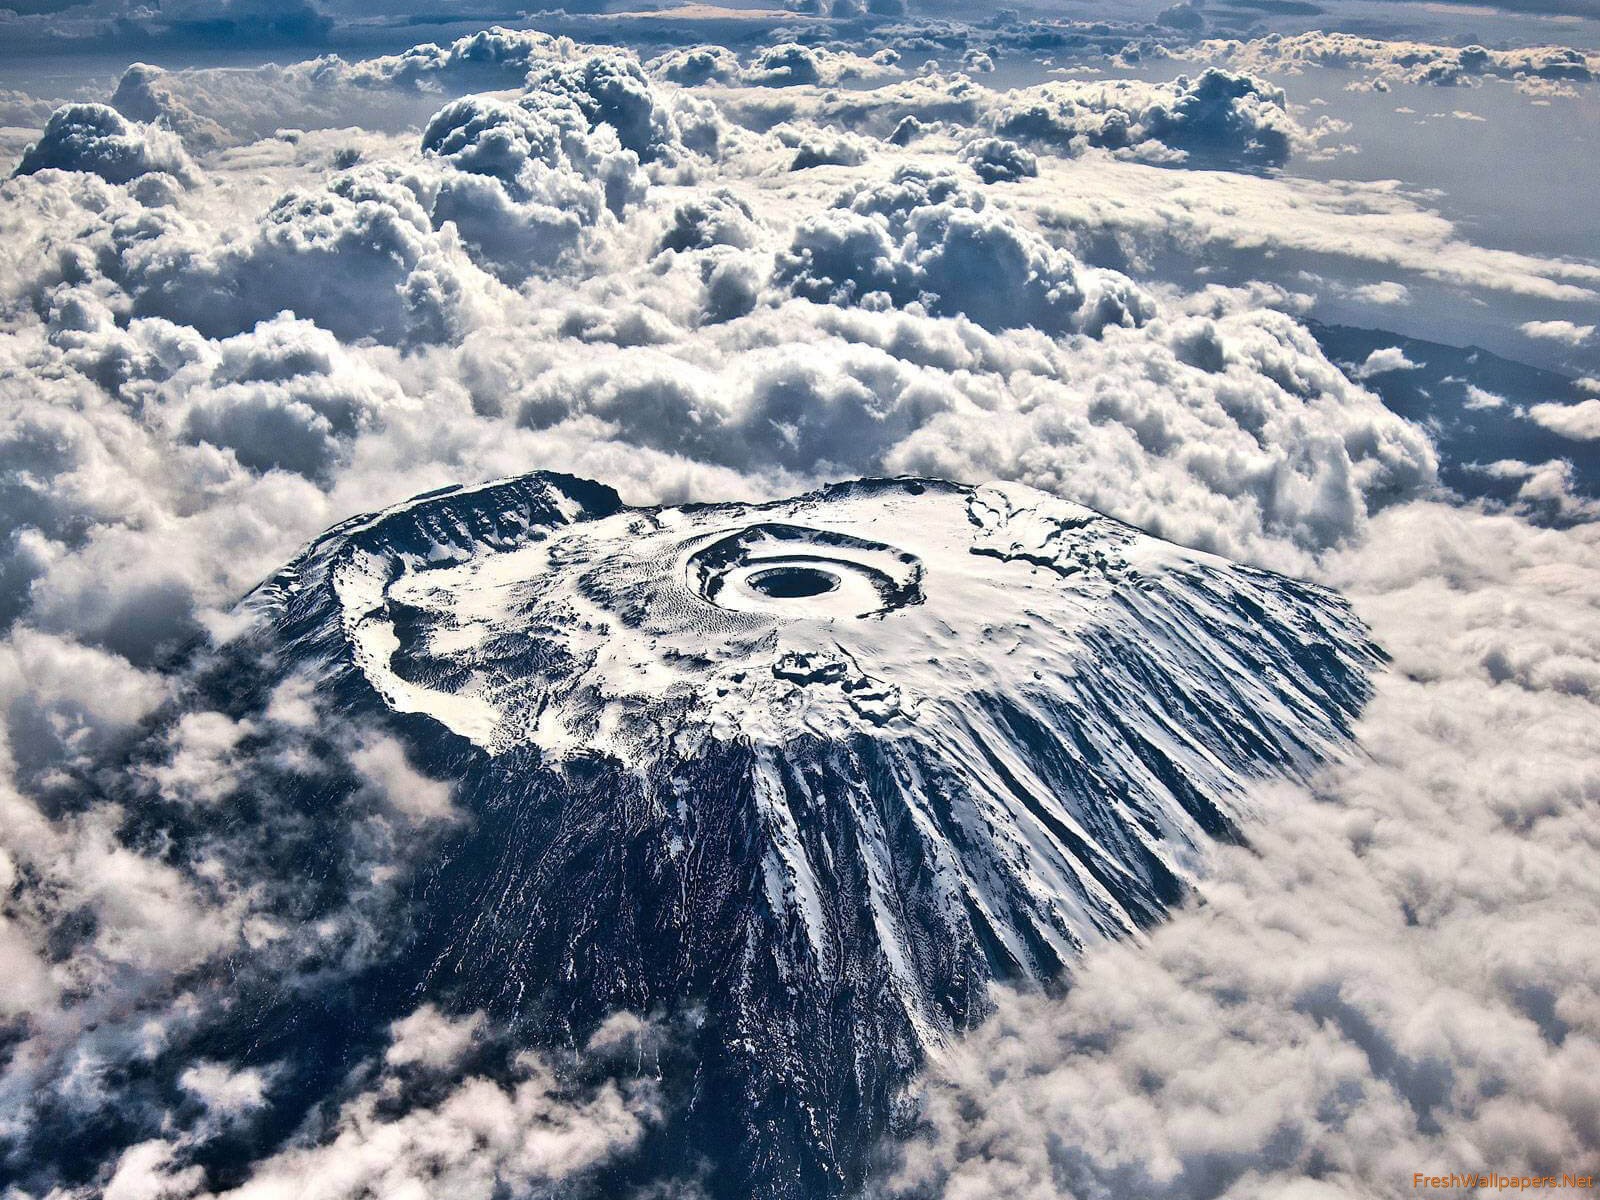 Lagi, Mafesripala Taklukkan Salah Satu Gunung Tertinggi di Dunia